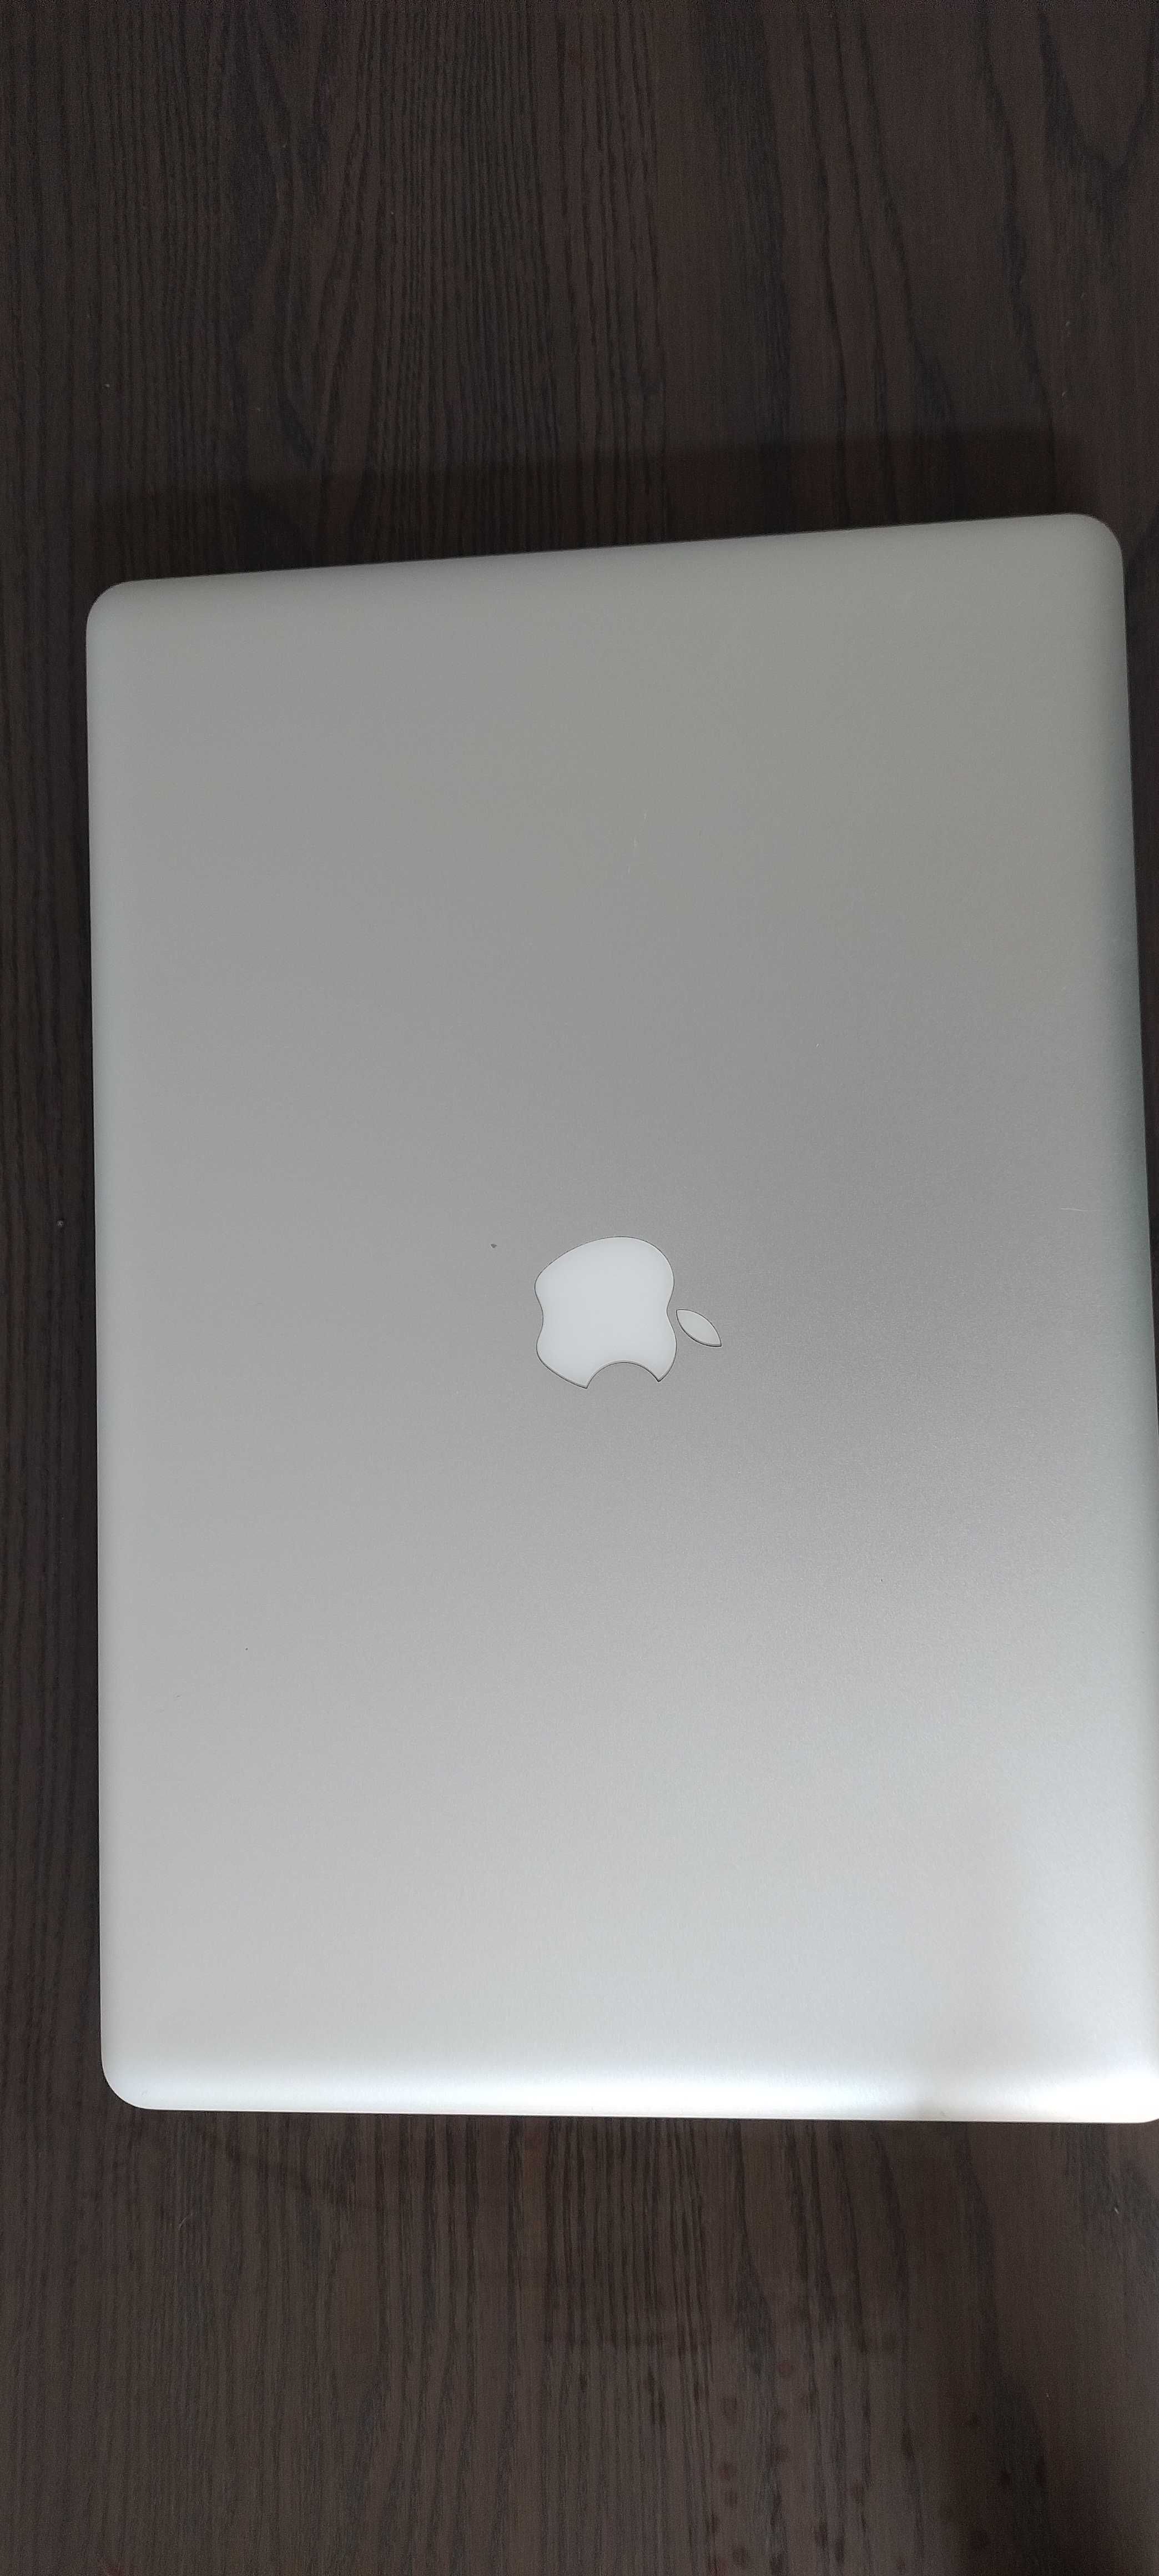 MacBook pro 17 cali (połowa 2009)